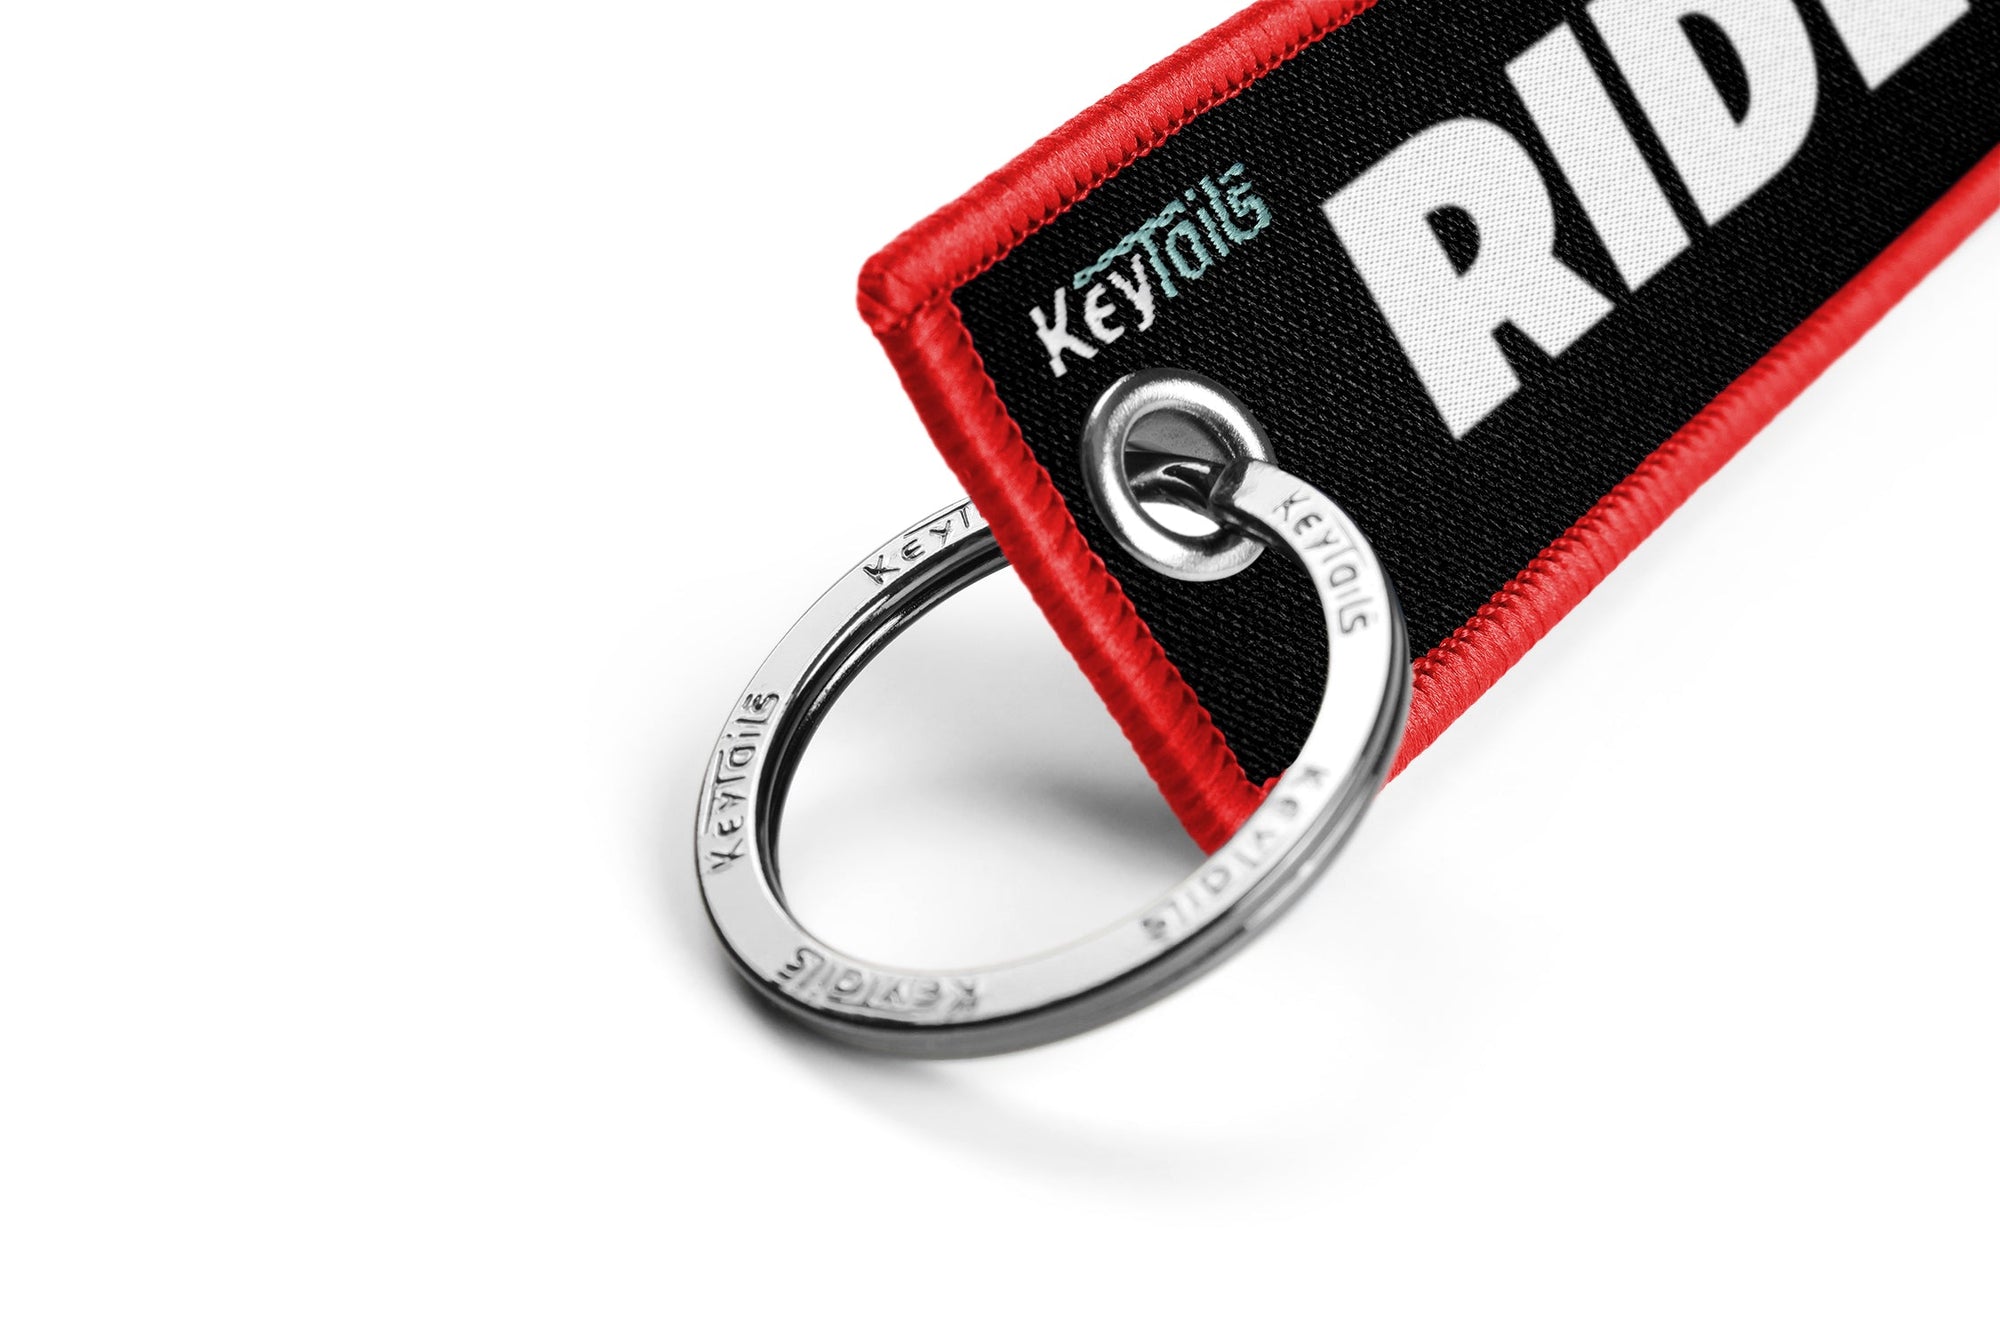 Ride or Die Keychain, Key Tag - Red